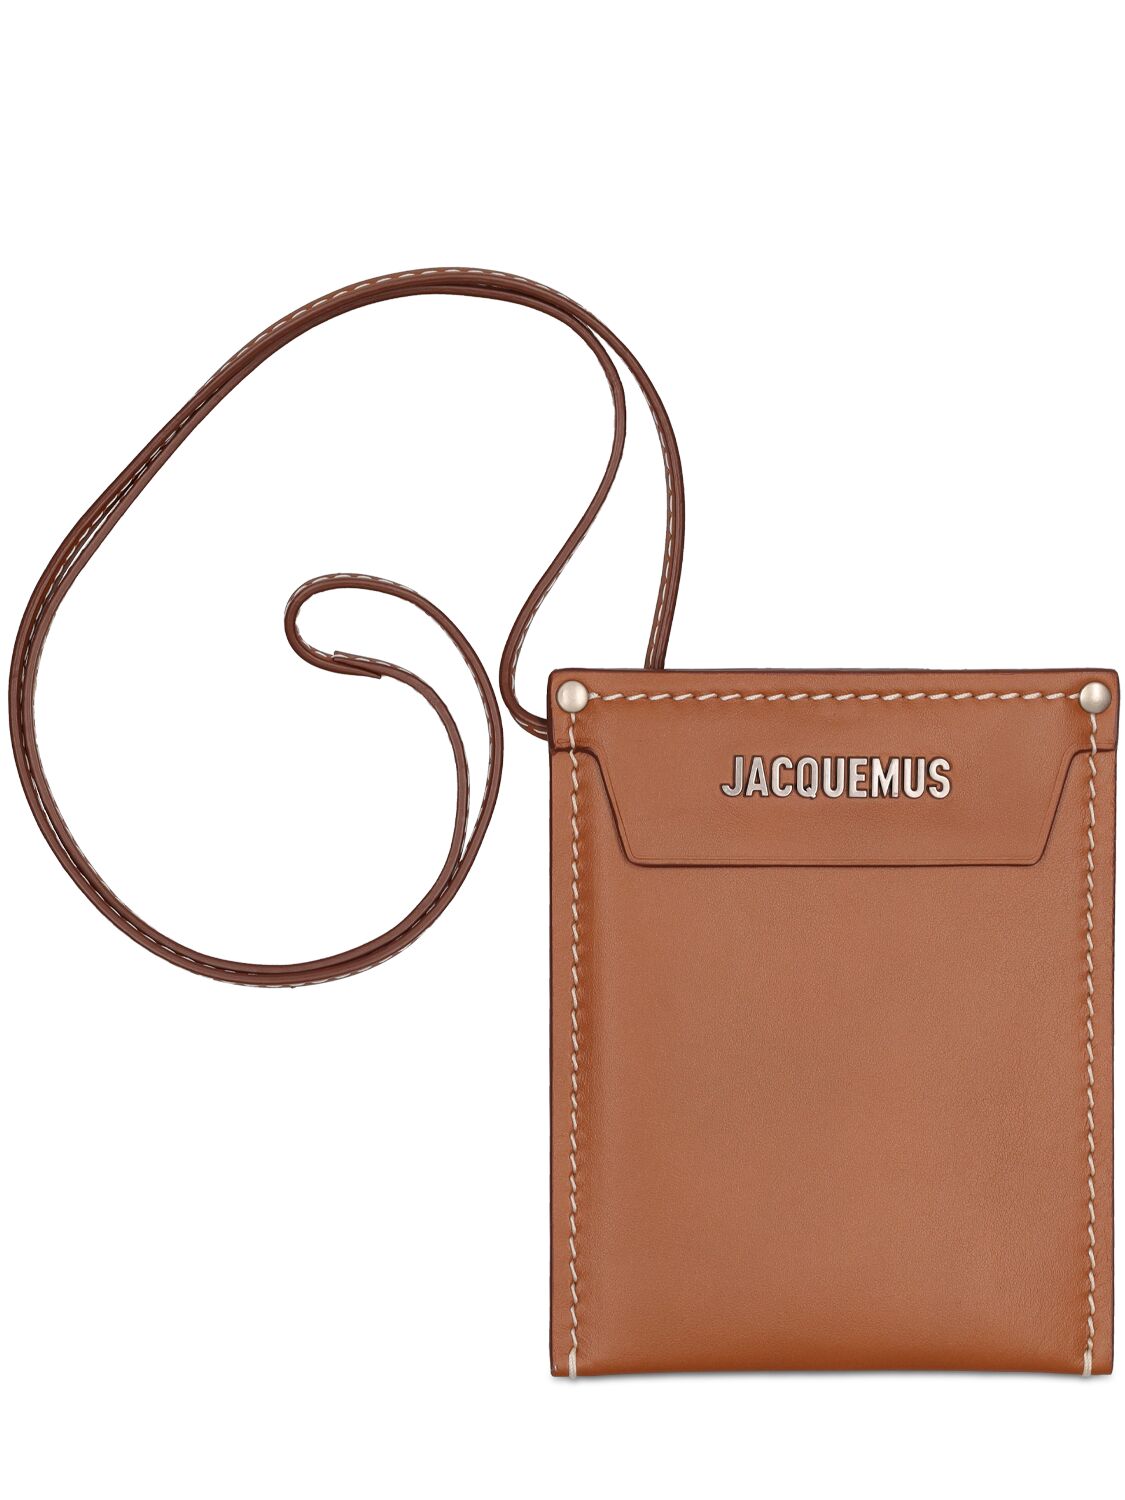 Le Porte wallet, Jacquemus